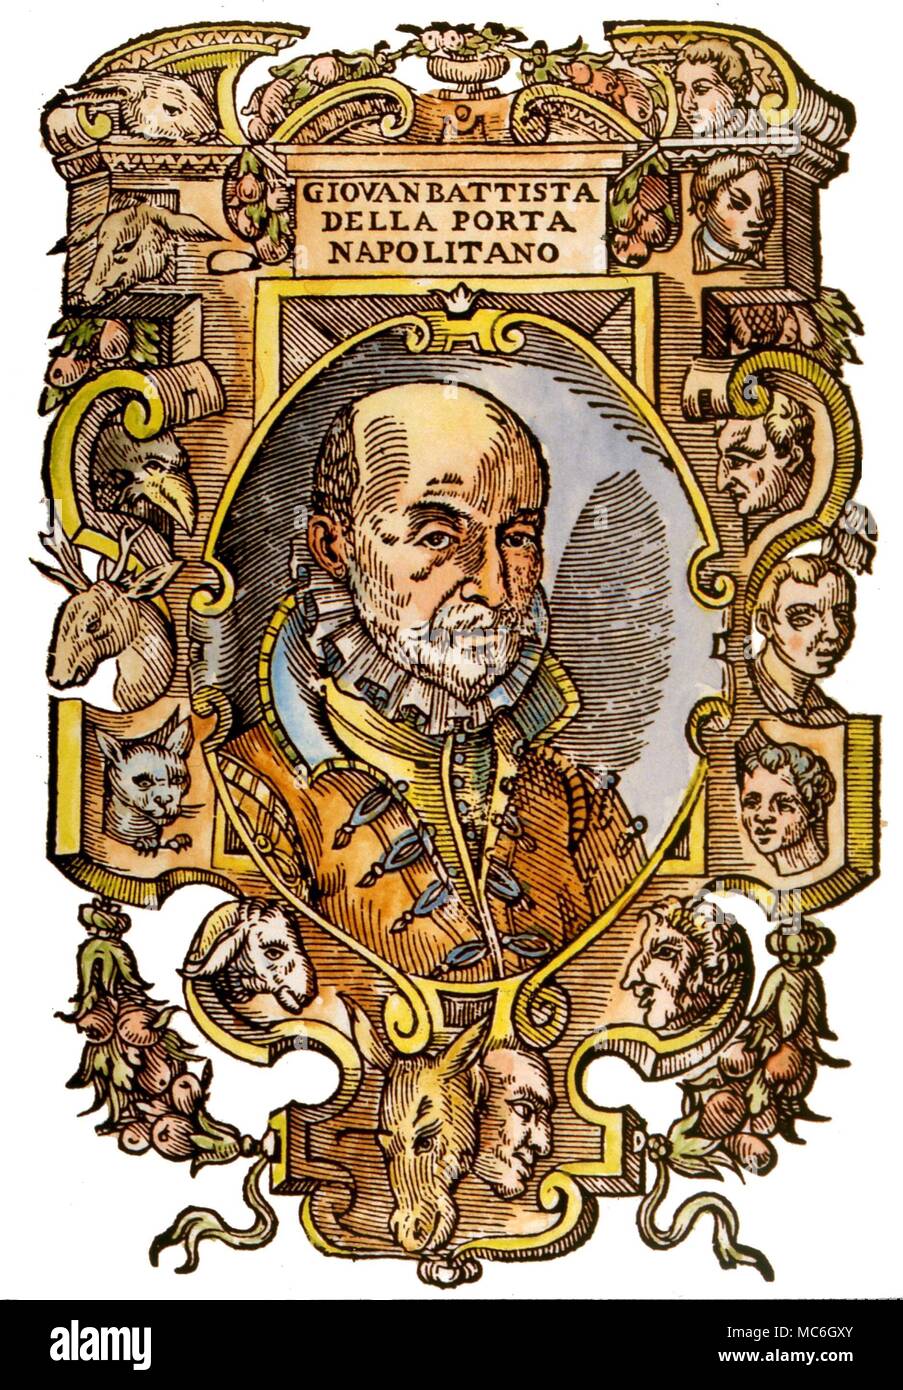 INE - MEDIC della Porta. Le médecin et physiognomist, Giovanni Battista della Porta (1538-1615). Titlepage avec les animaux du zodiaque qui figurait dans son travail, de sa Magia Naturalis, 1589 Banque D'Images